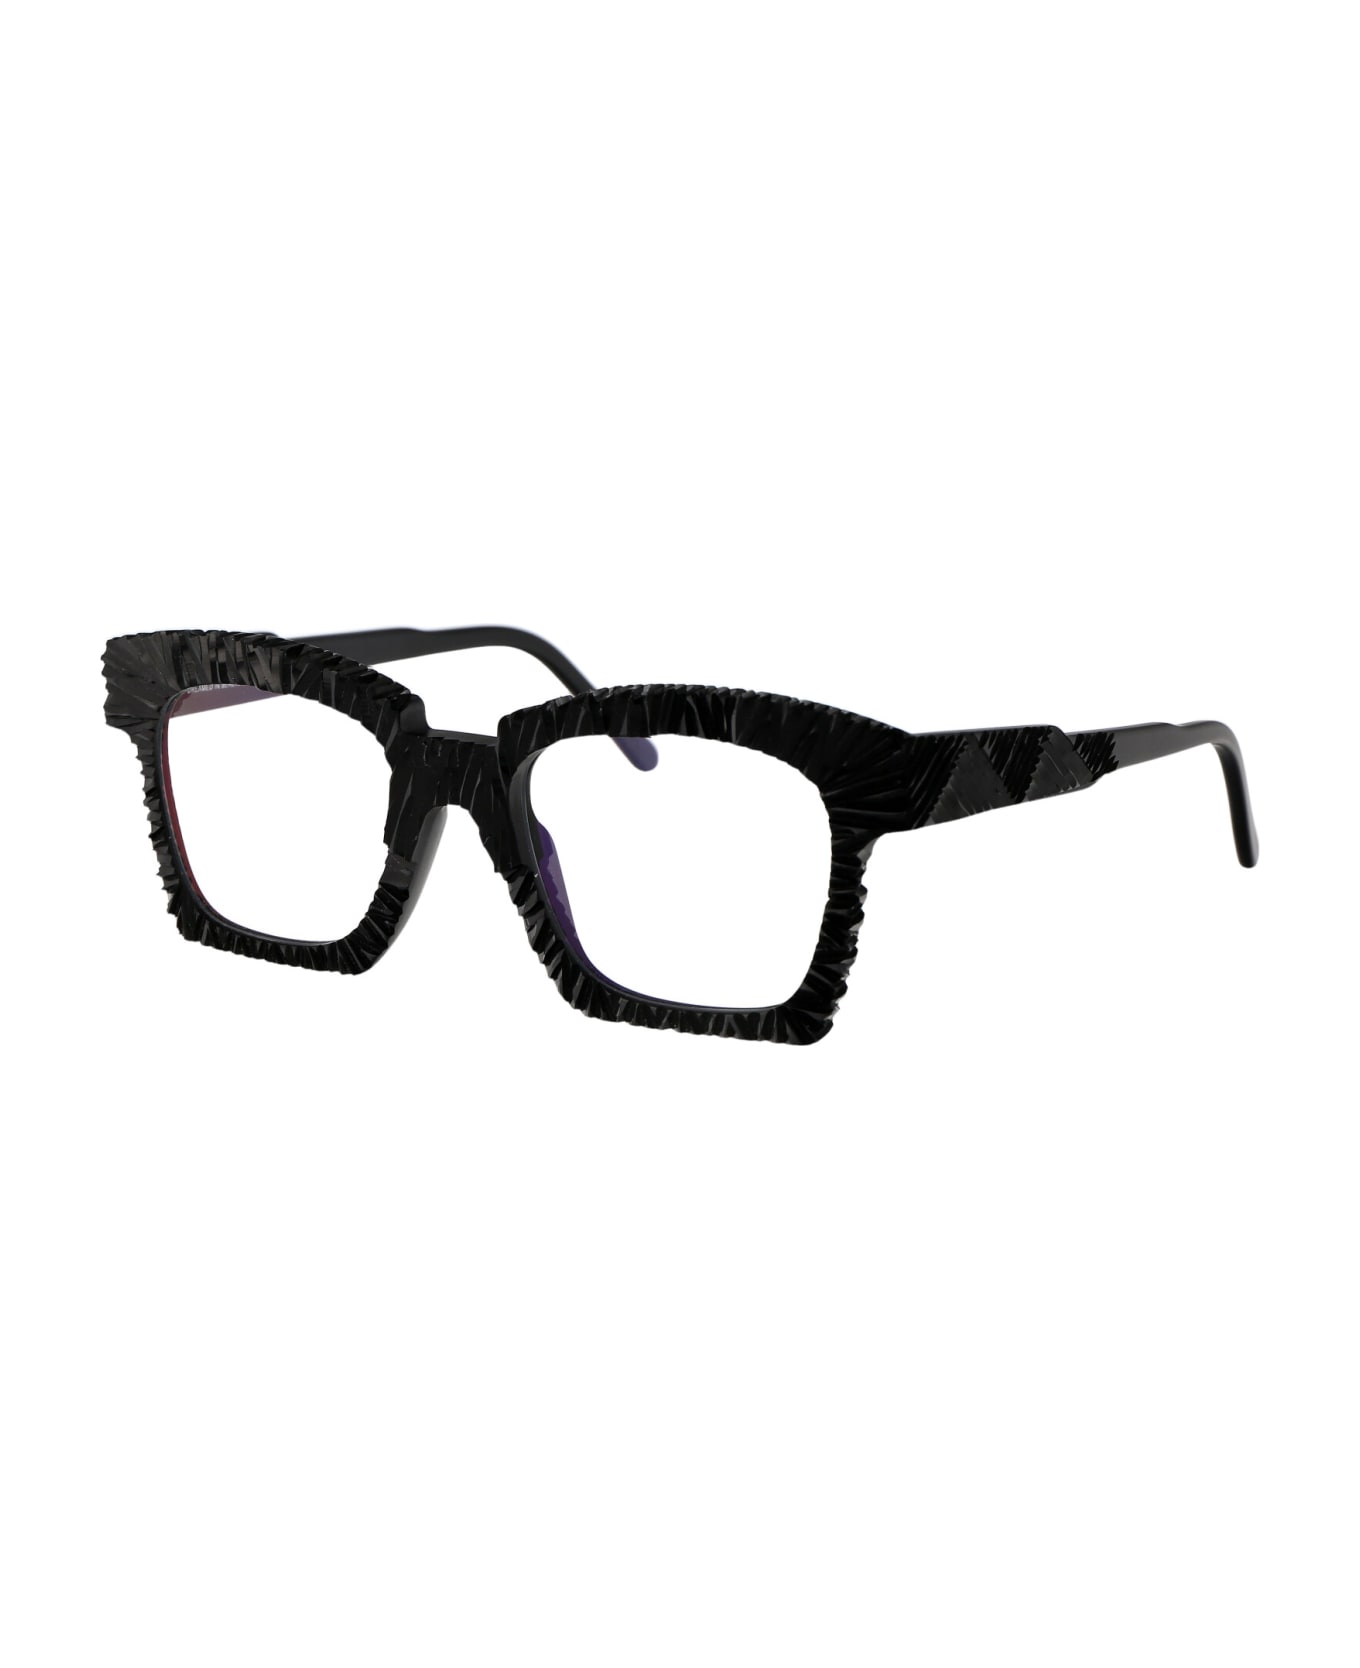 Kuboraum Maske K5 Glasses - OS アイウェア